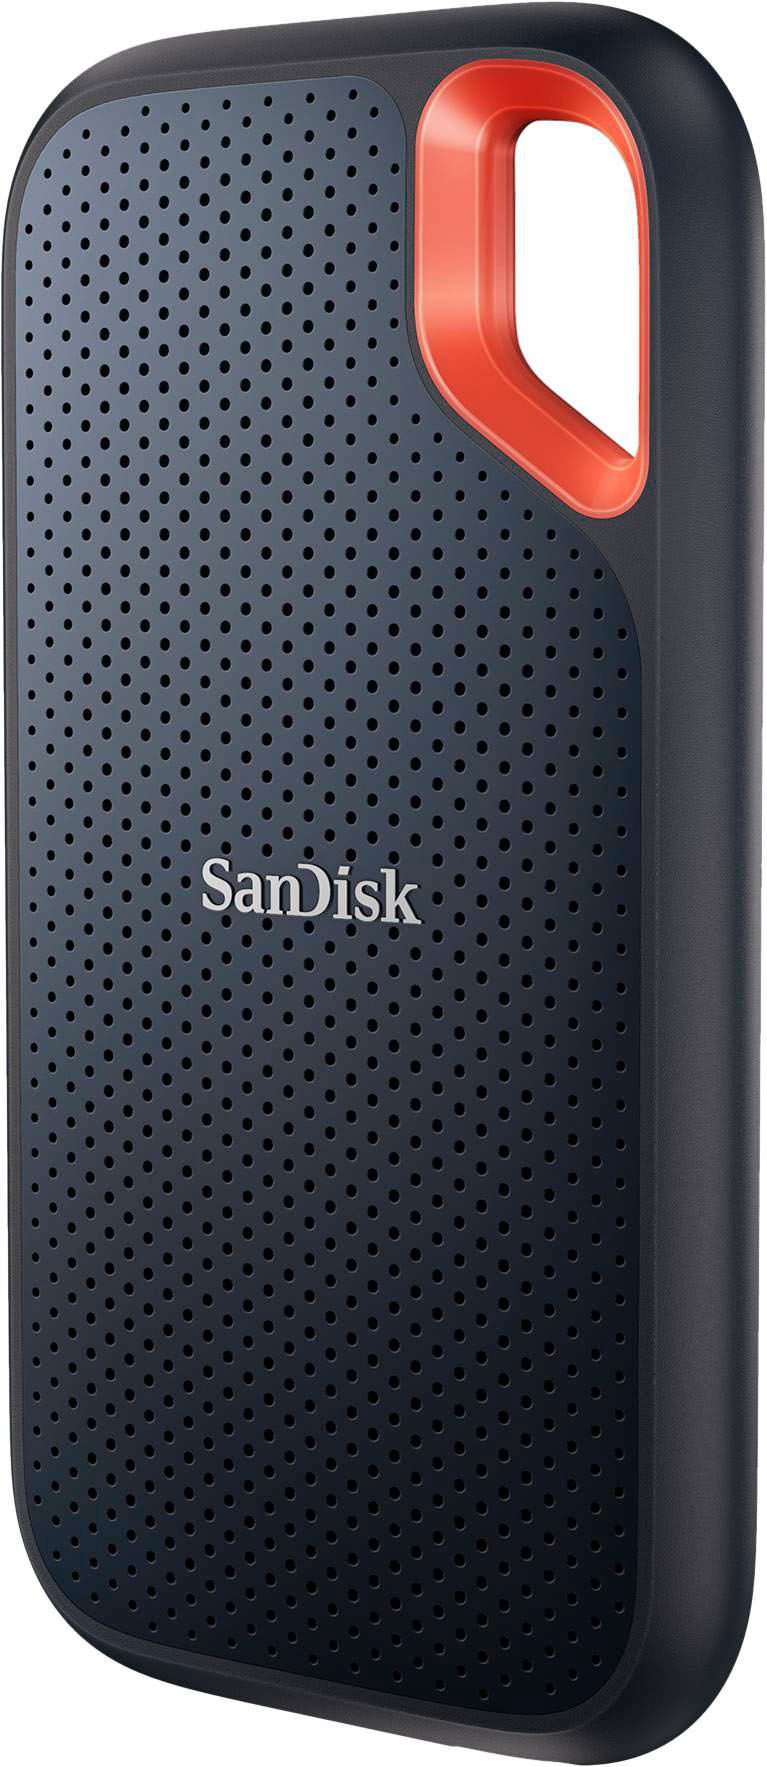 SanDisk Extreme Portable 1TB External USB-C NVMe SSD Black  SDSSDE61-1T00-G25 - Best Buy